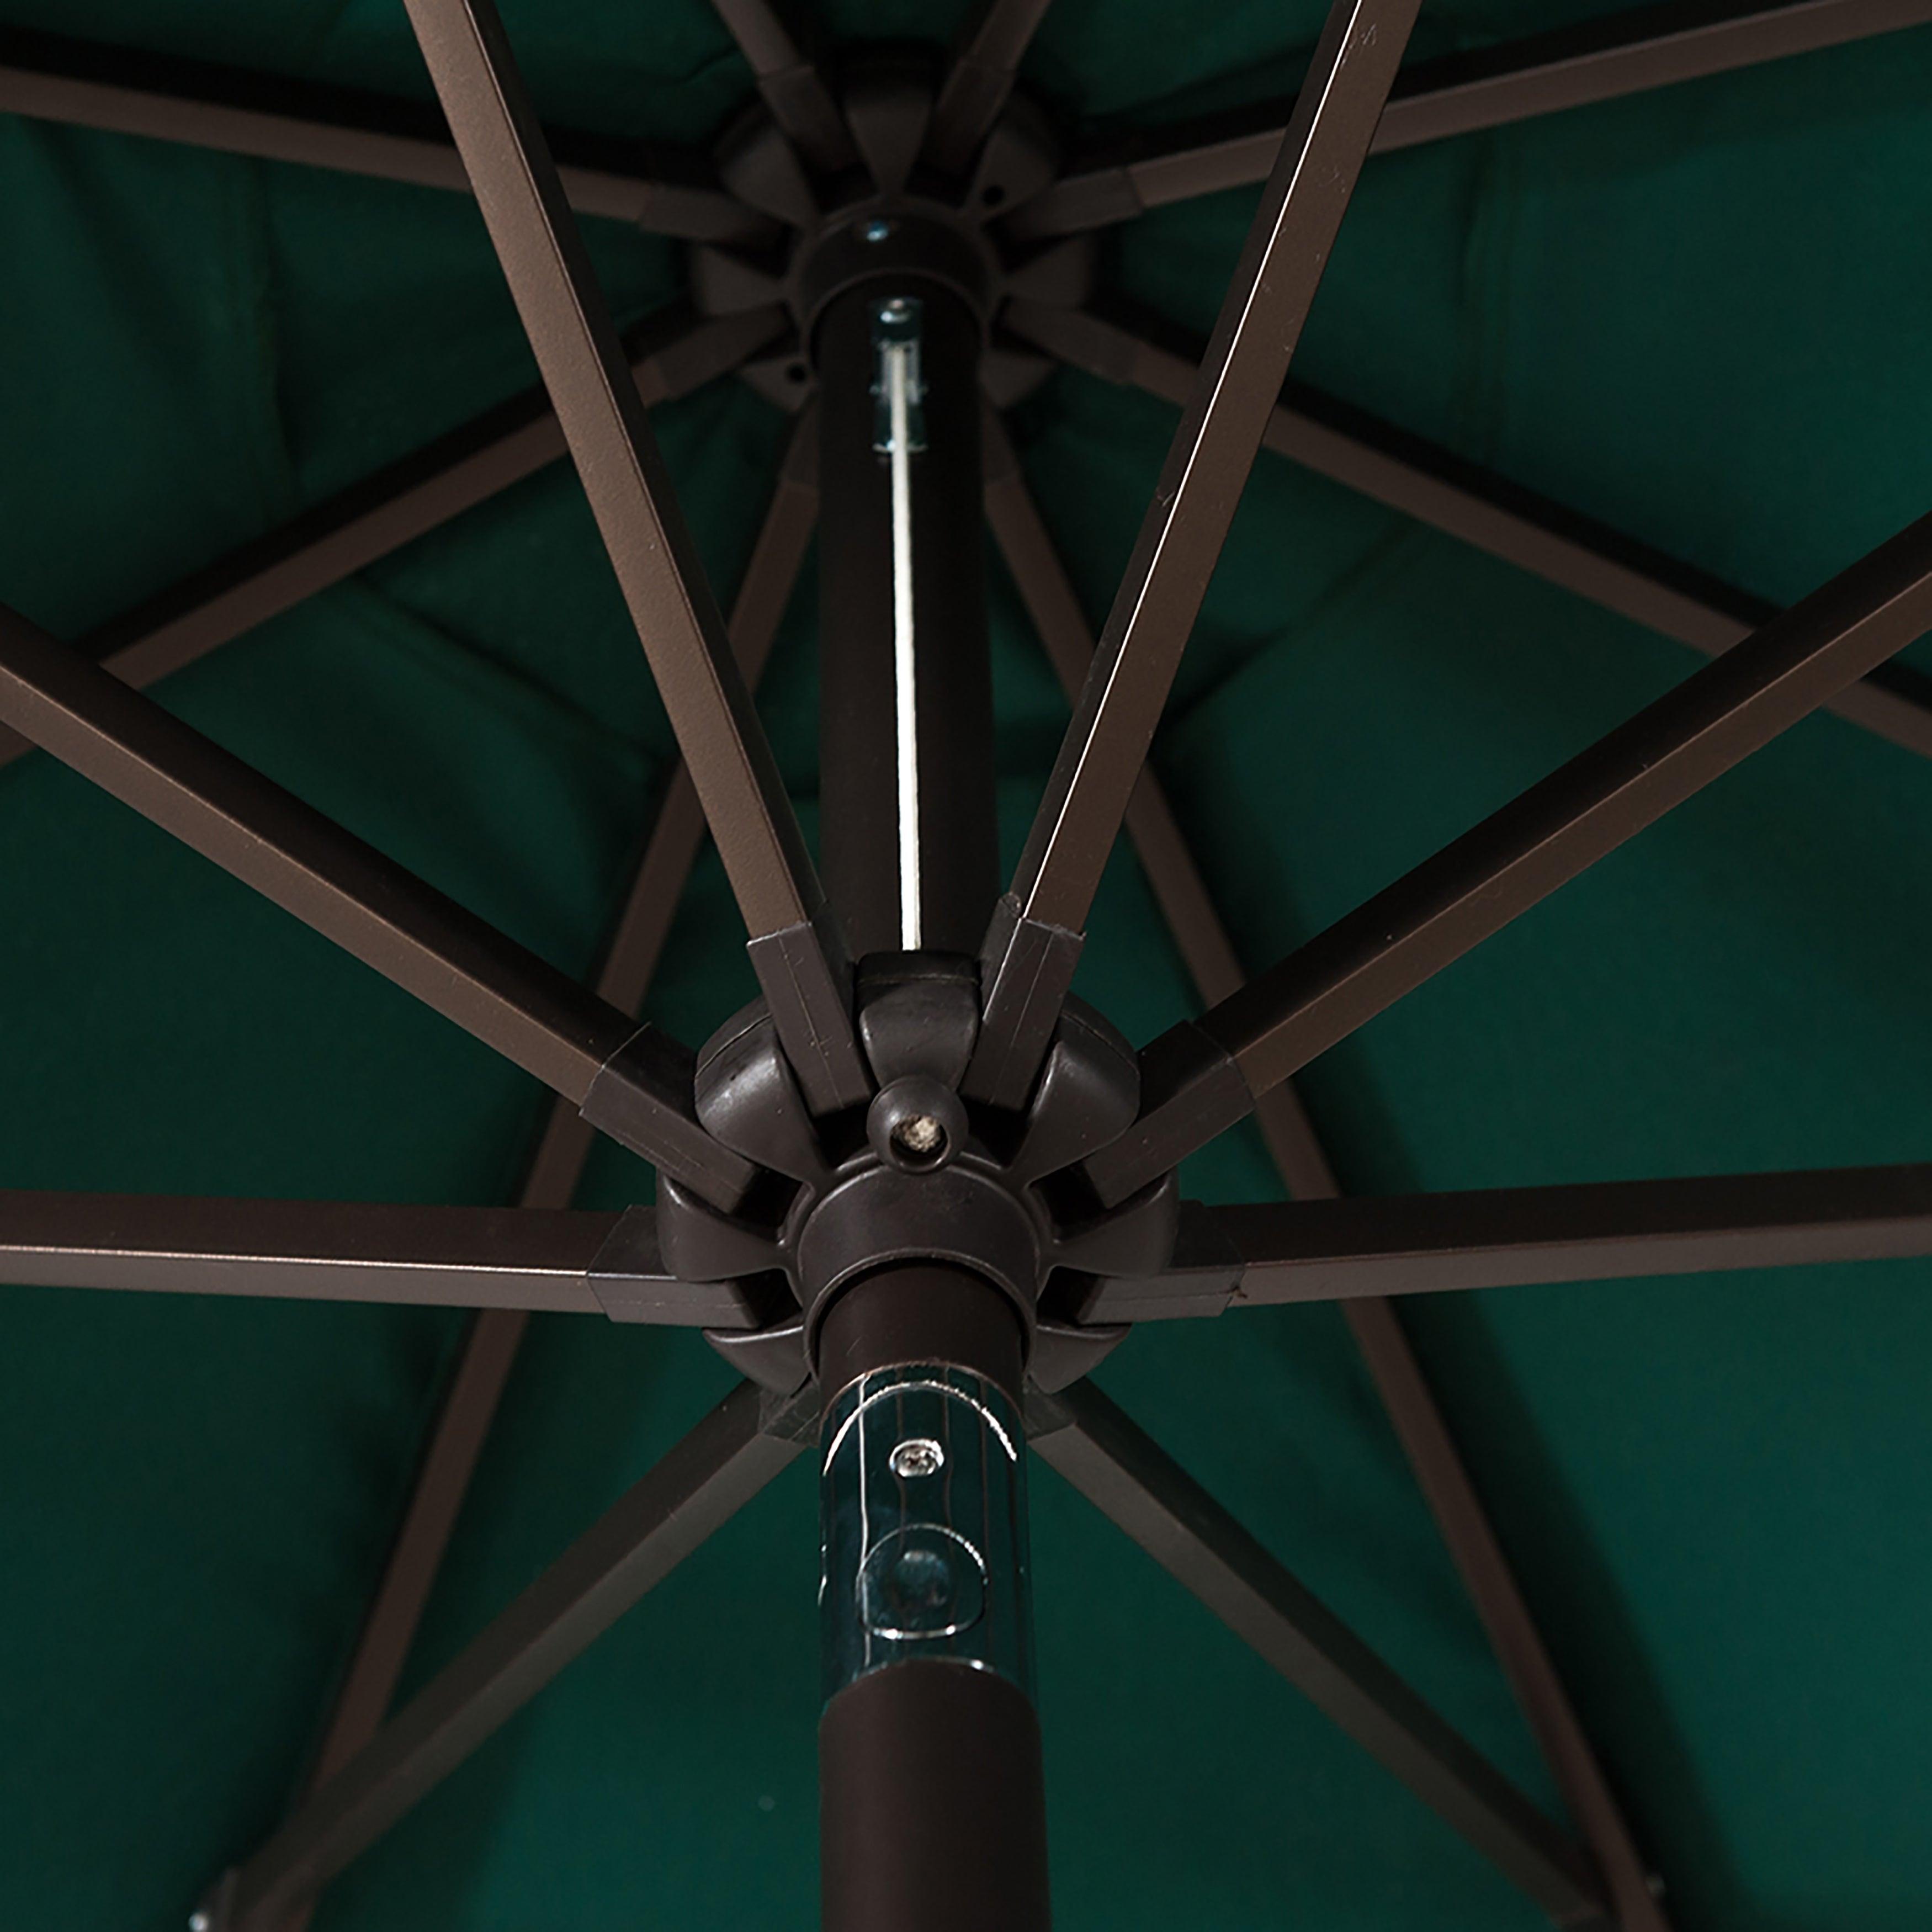 9 Ft Patio Umbrella for Outdoor Shade, Dark Green